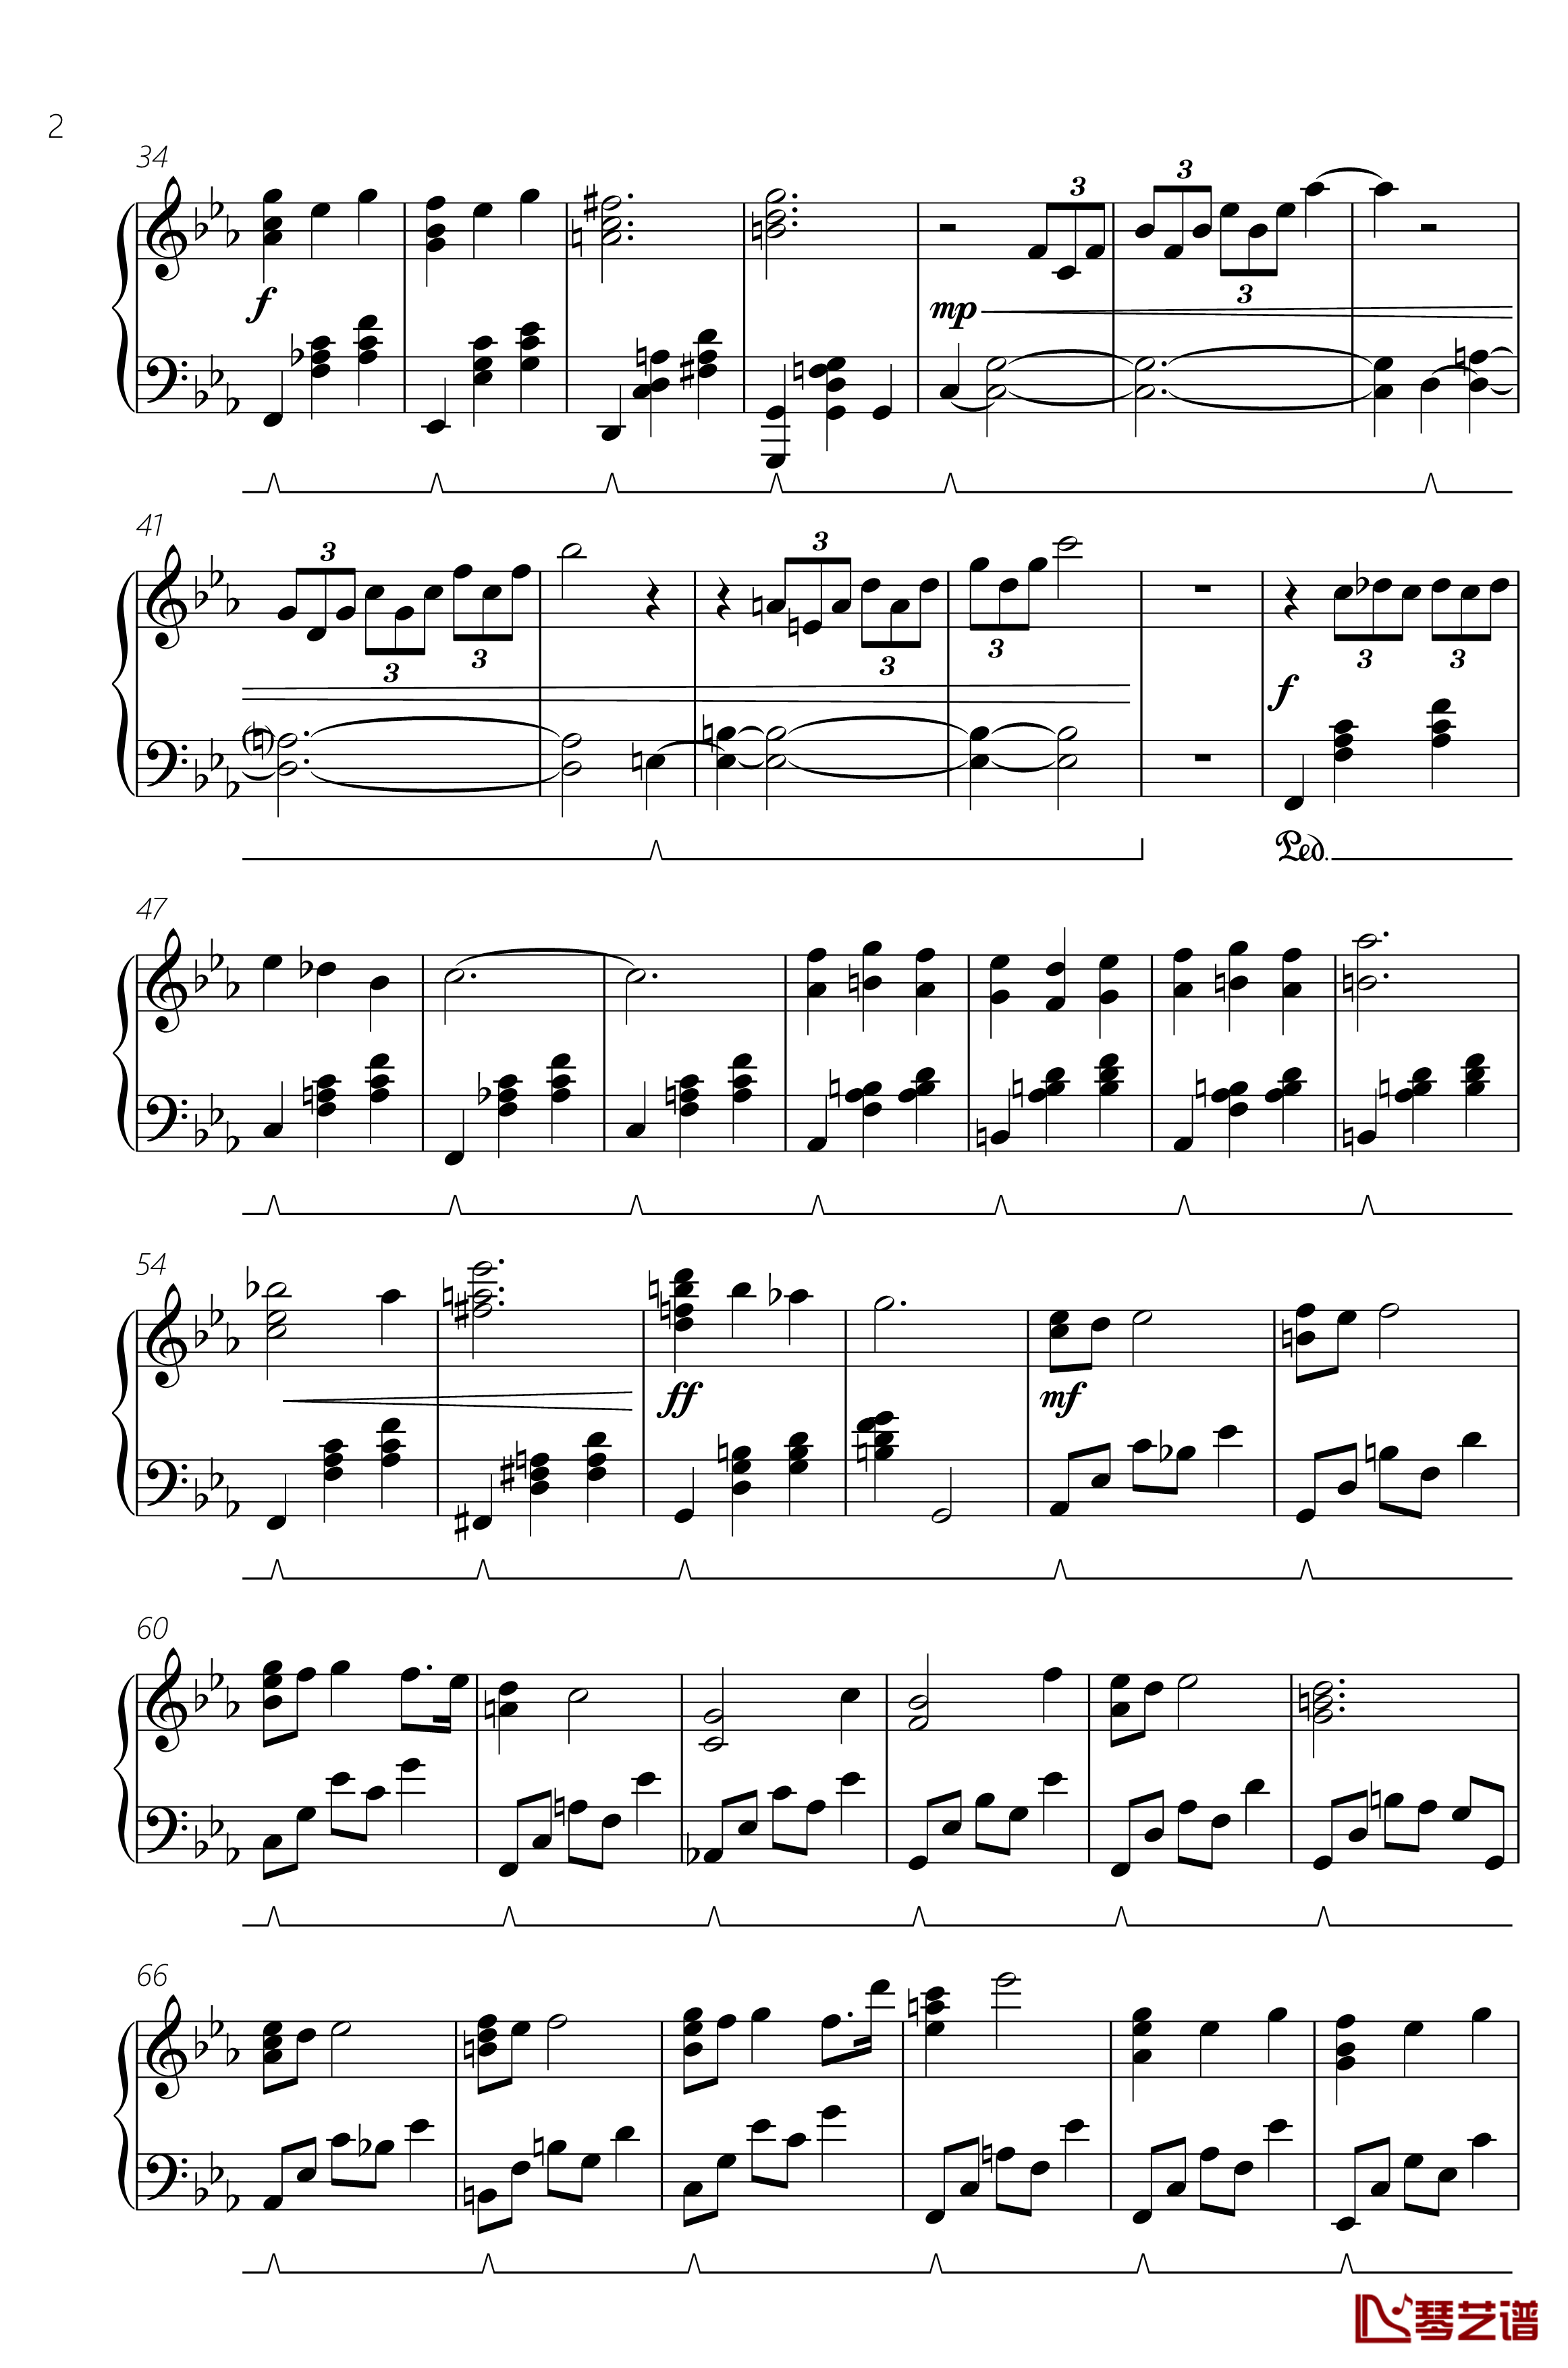 艾达主题钢琴谱-FF14-死者宫殿50层BGM-最终幻想2